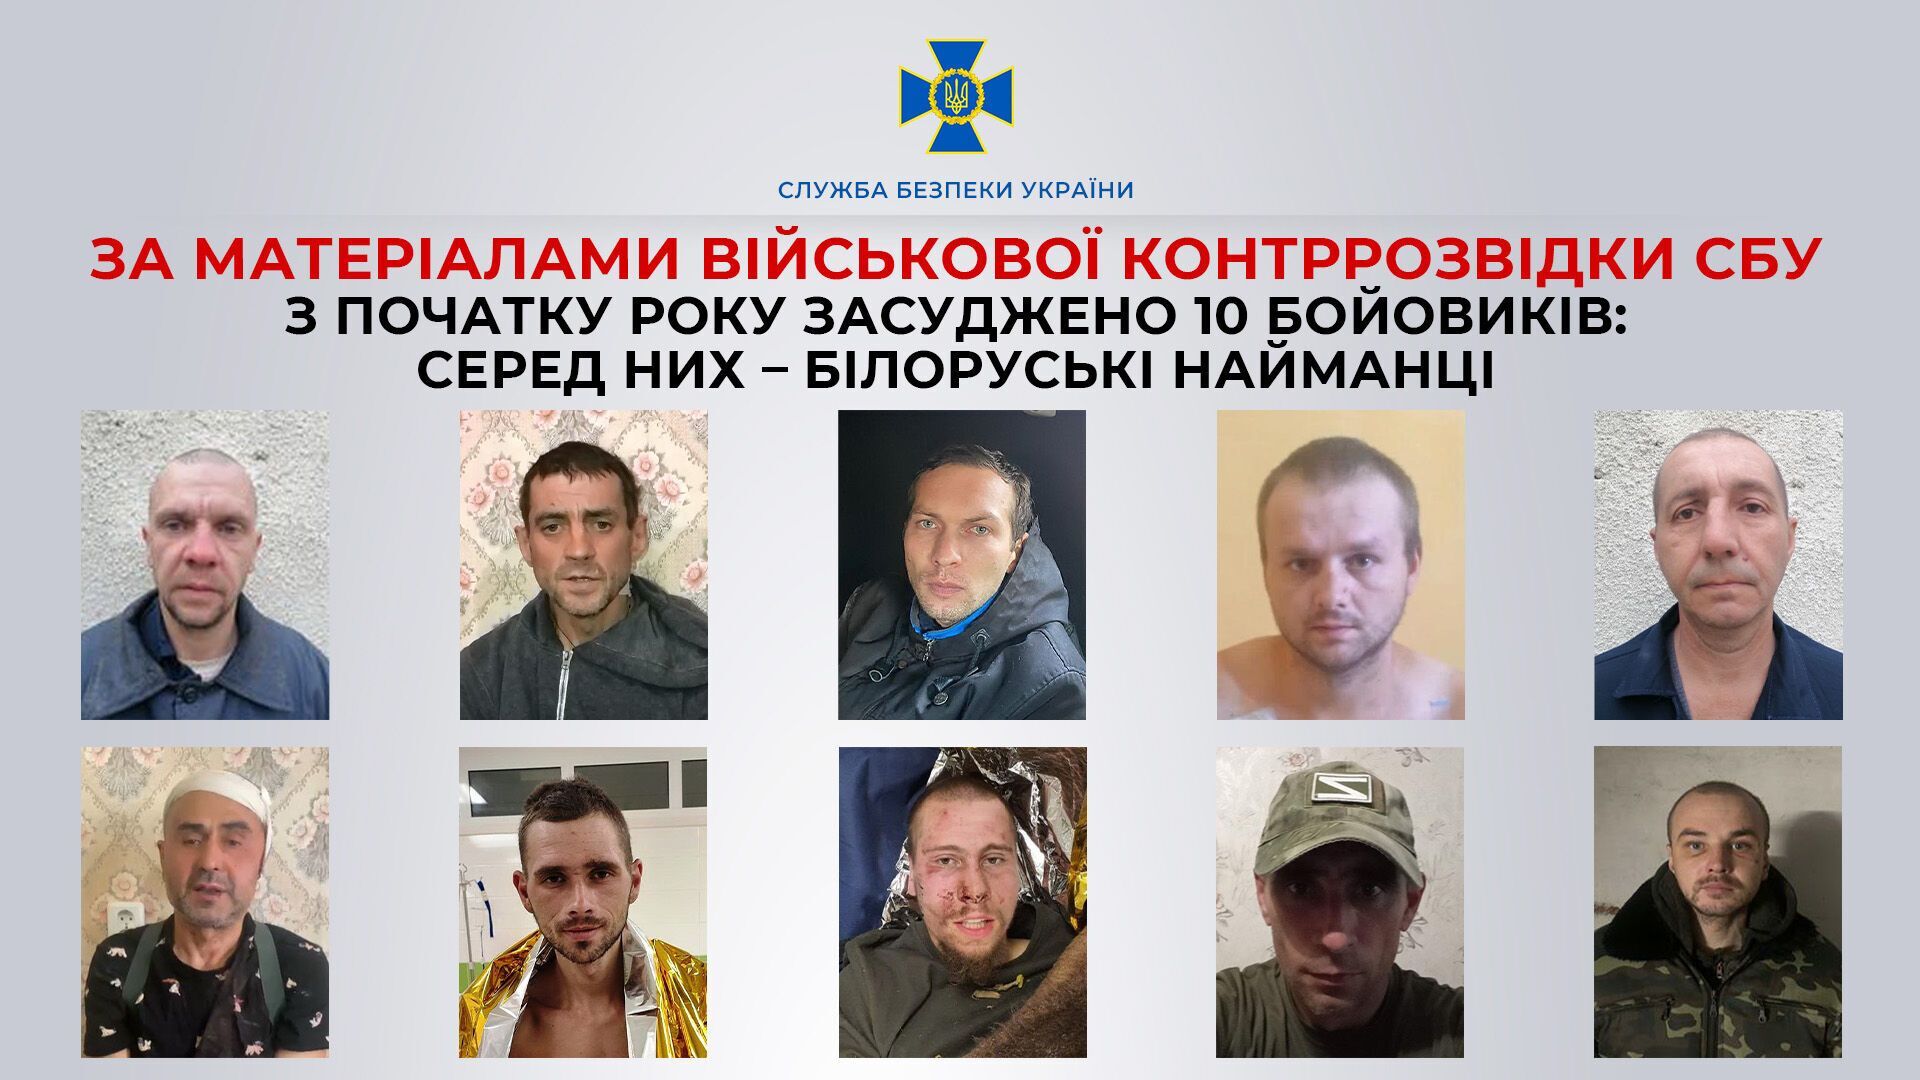 Фотографии боевиков из армии рф, осужденных в Украине